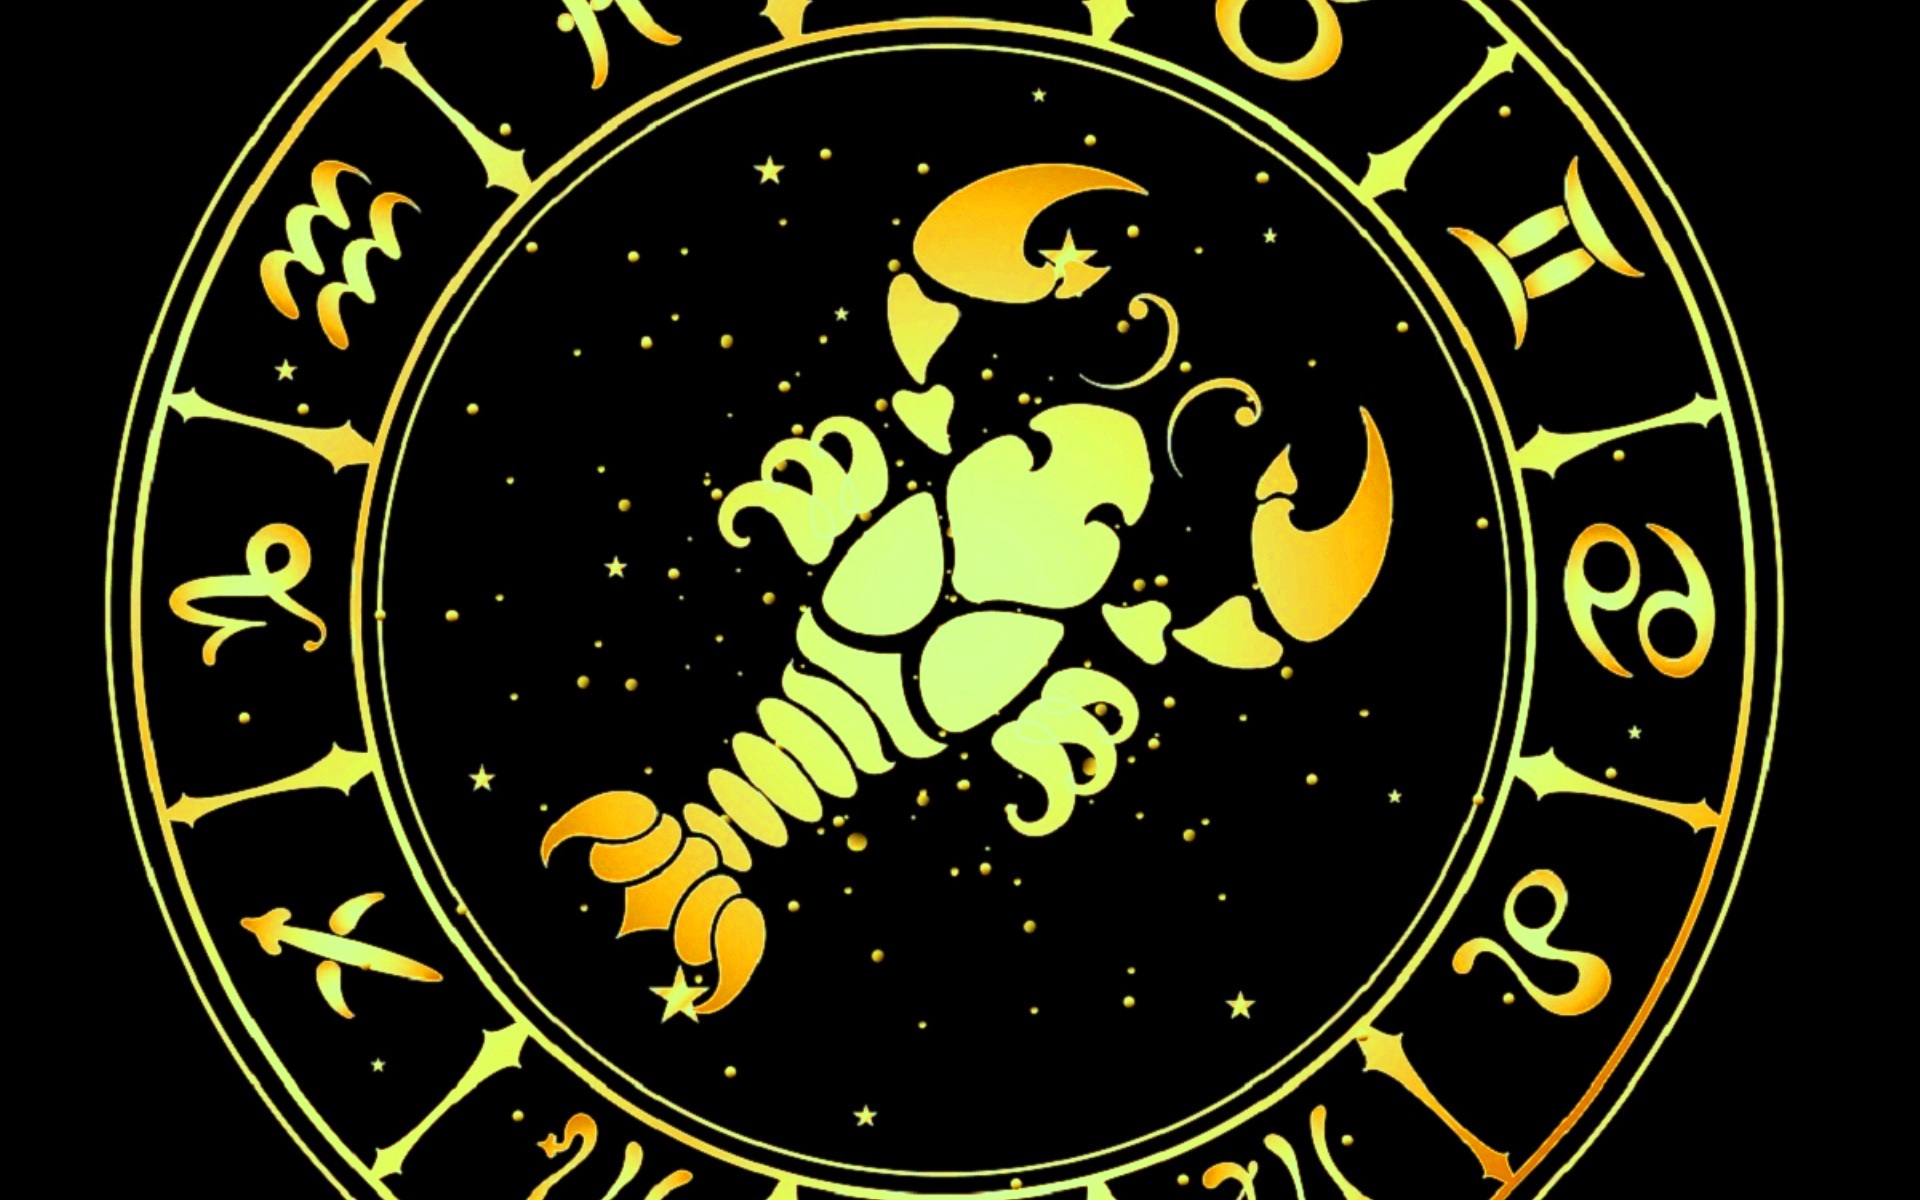 Гороскоп рак год дракона. Знаки зодиака. Скорпион знак в круге. Зодиакальный круг на черном фоне. Заки ЗОДИАКАПО кругу.